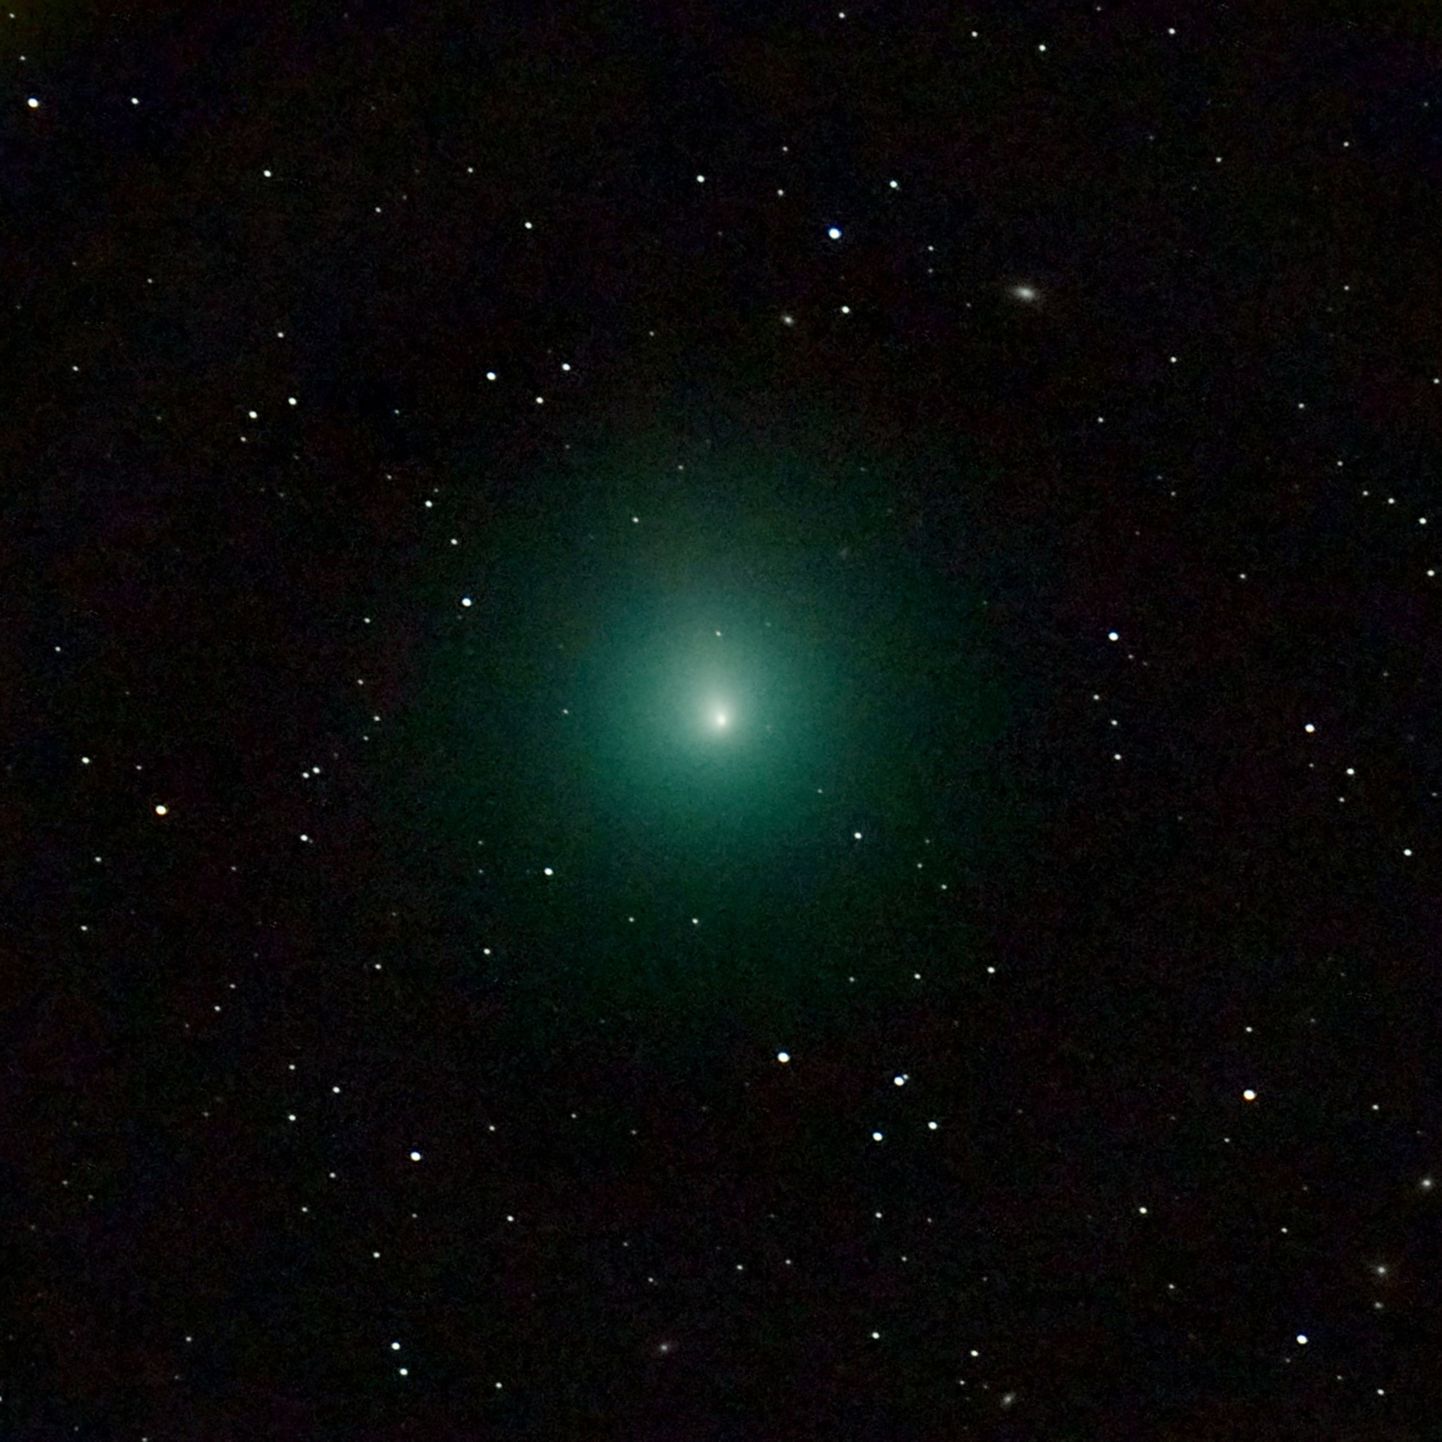 Prantsusmaa Pariisi observatooriumi foto komeet 46P/Wirtanenist, mis liikus 16. detsembril 2018 Maa juurest mööda